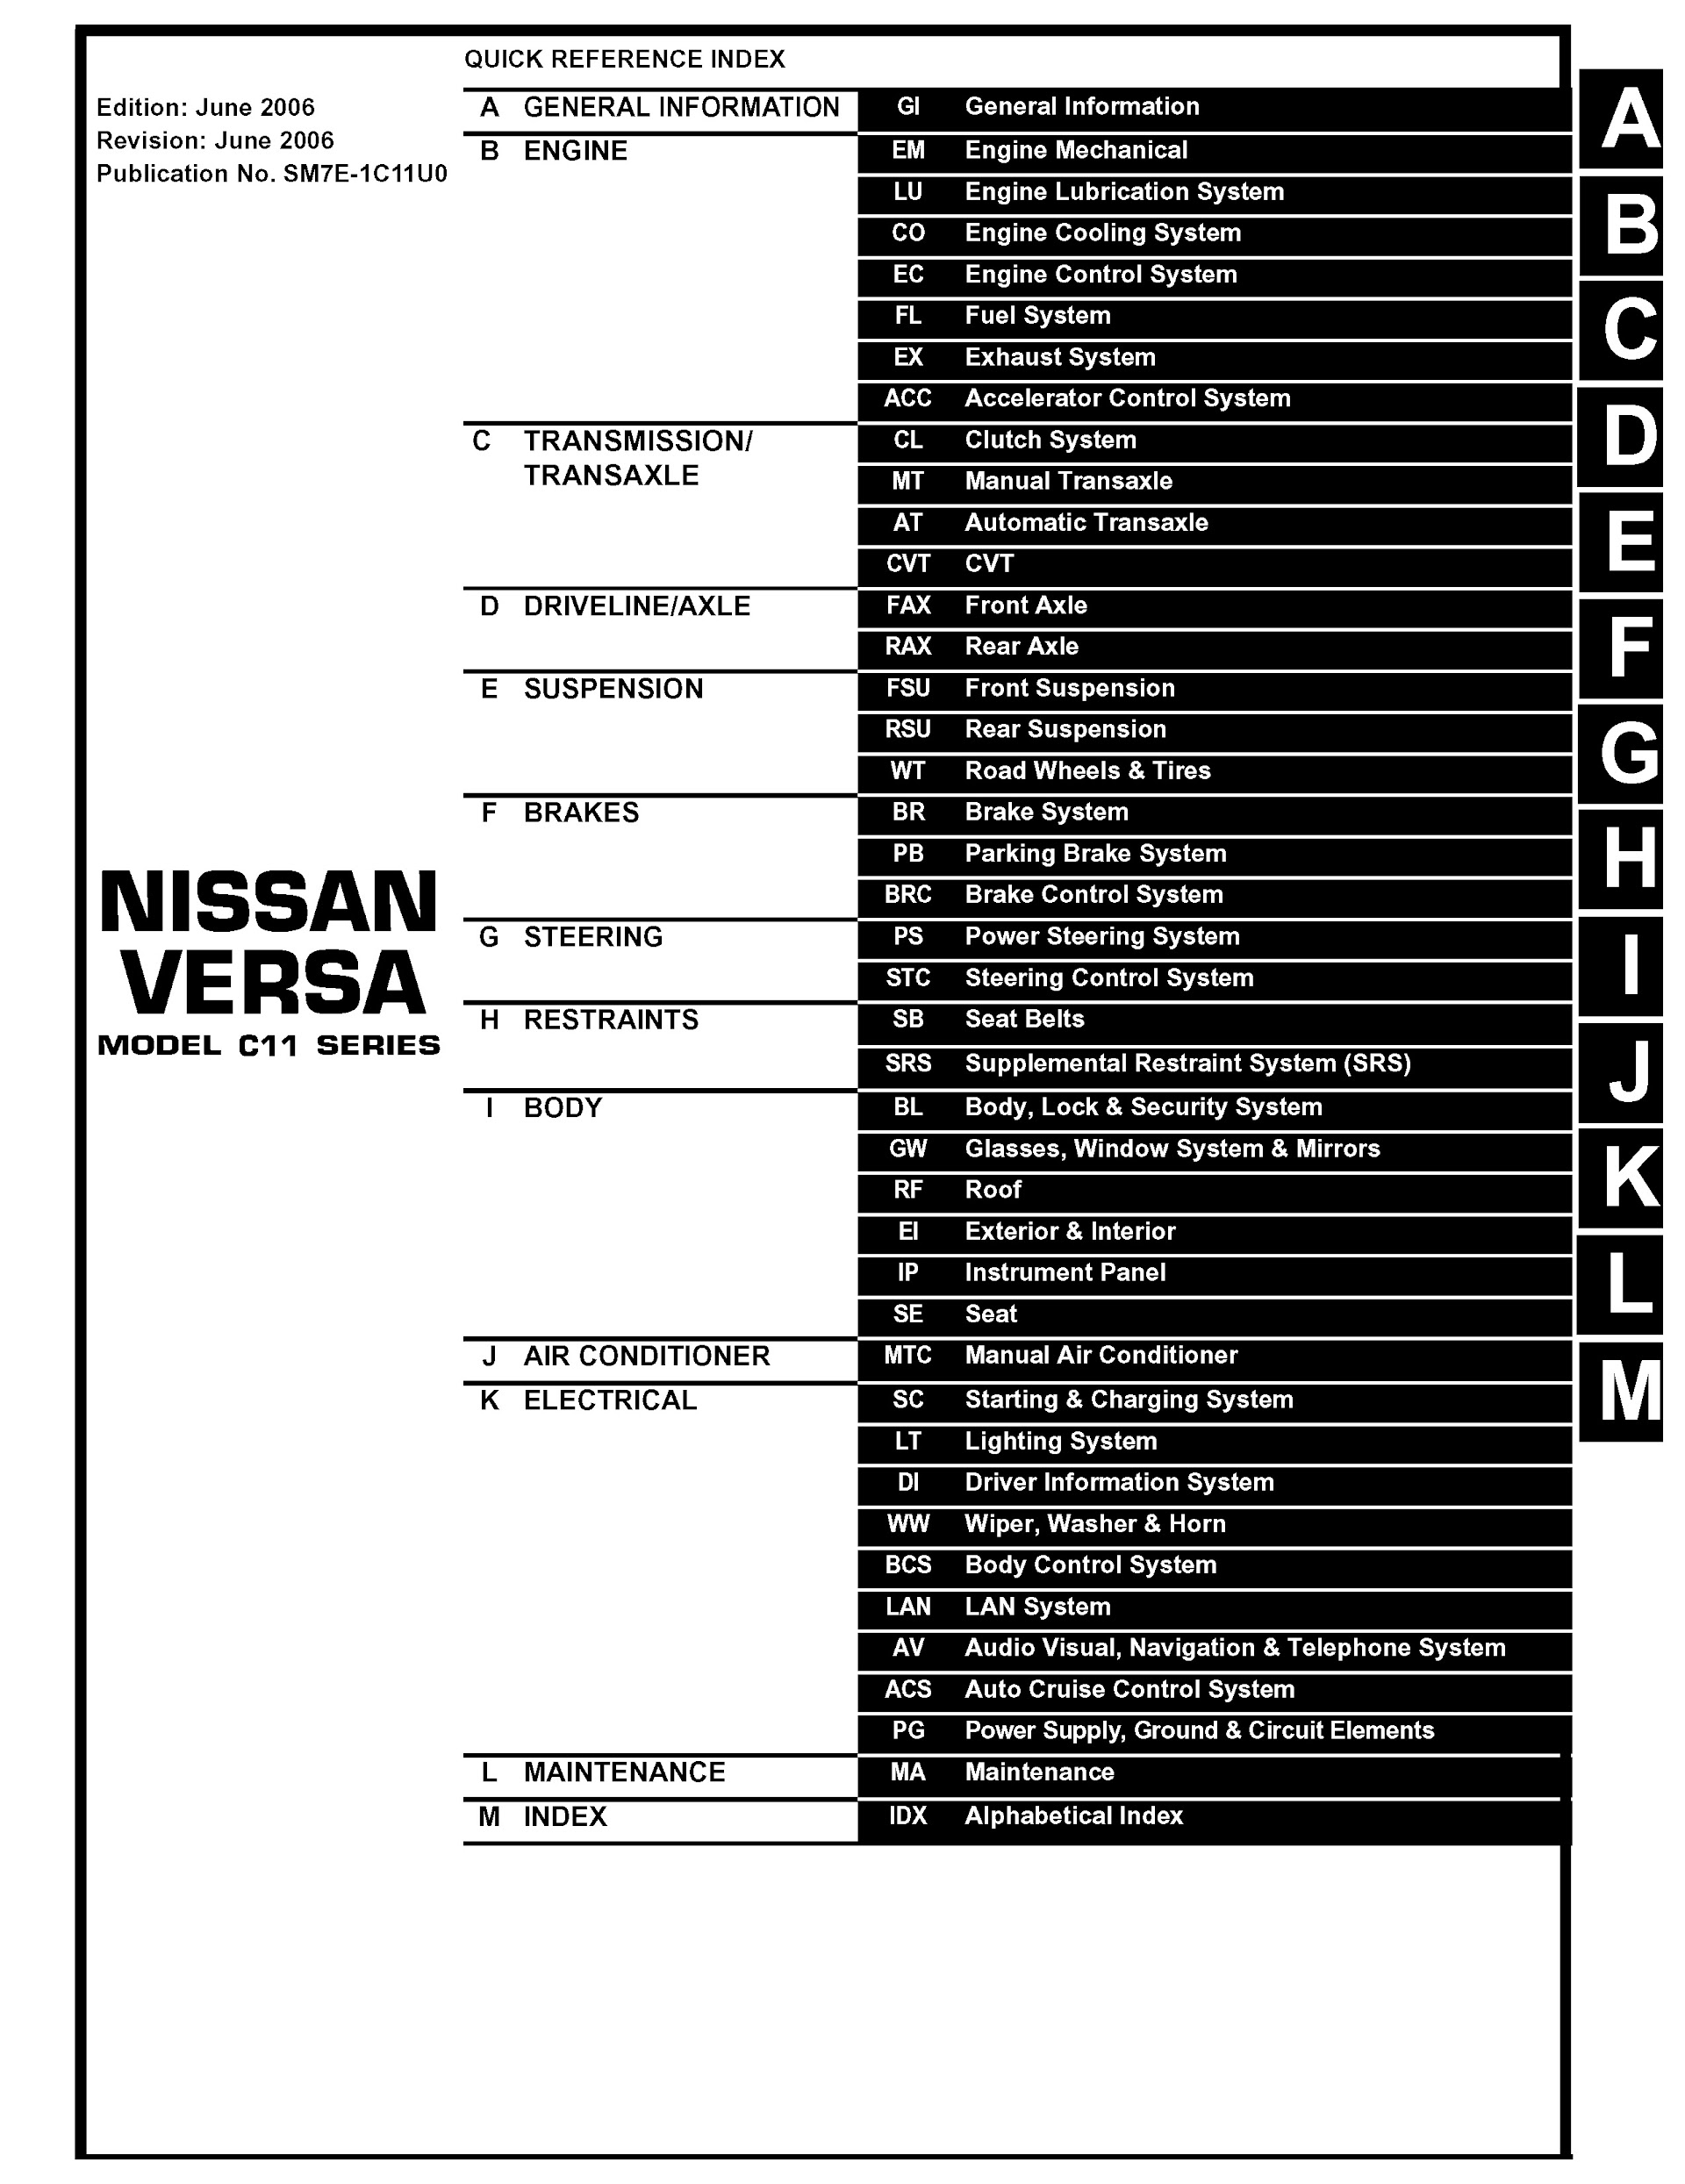 Table of Contents 2007 Nissan Versa Repair Manual